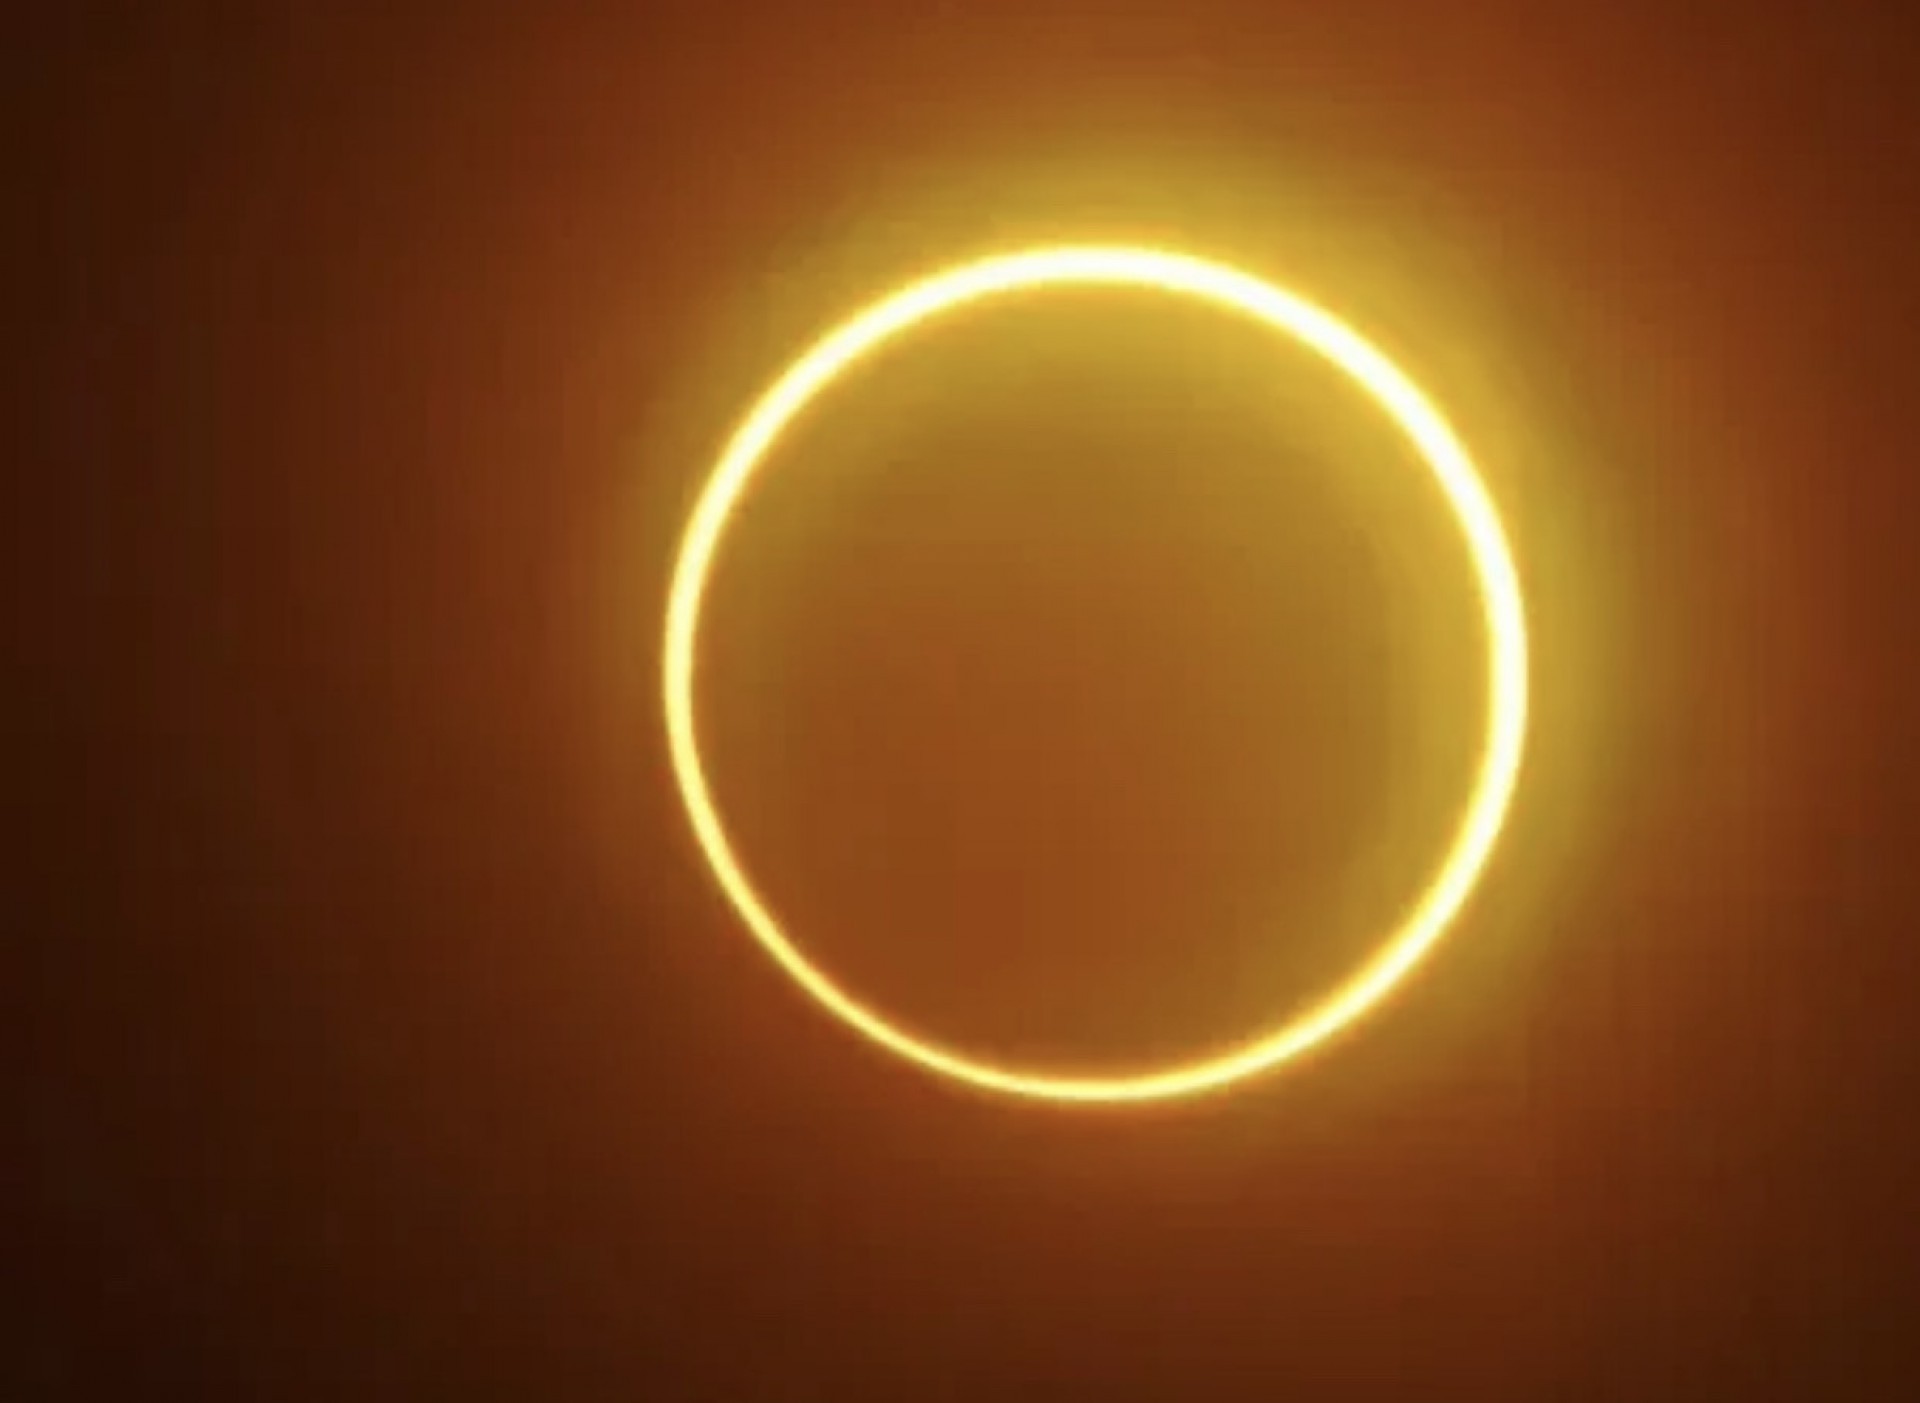 Eclipse solar anular é caracterizado por formação de um "anel de fogo" no céu (Foto: FERDINANDH CABRERA/AFP)